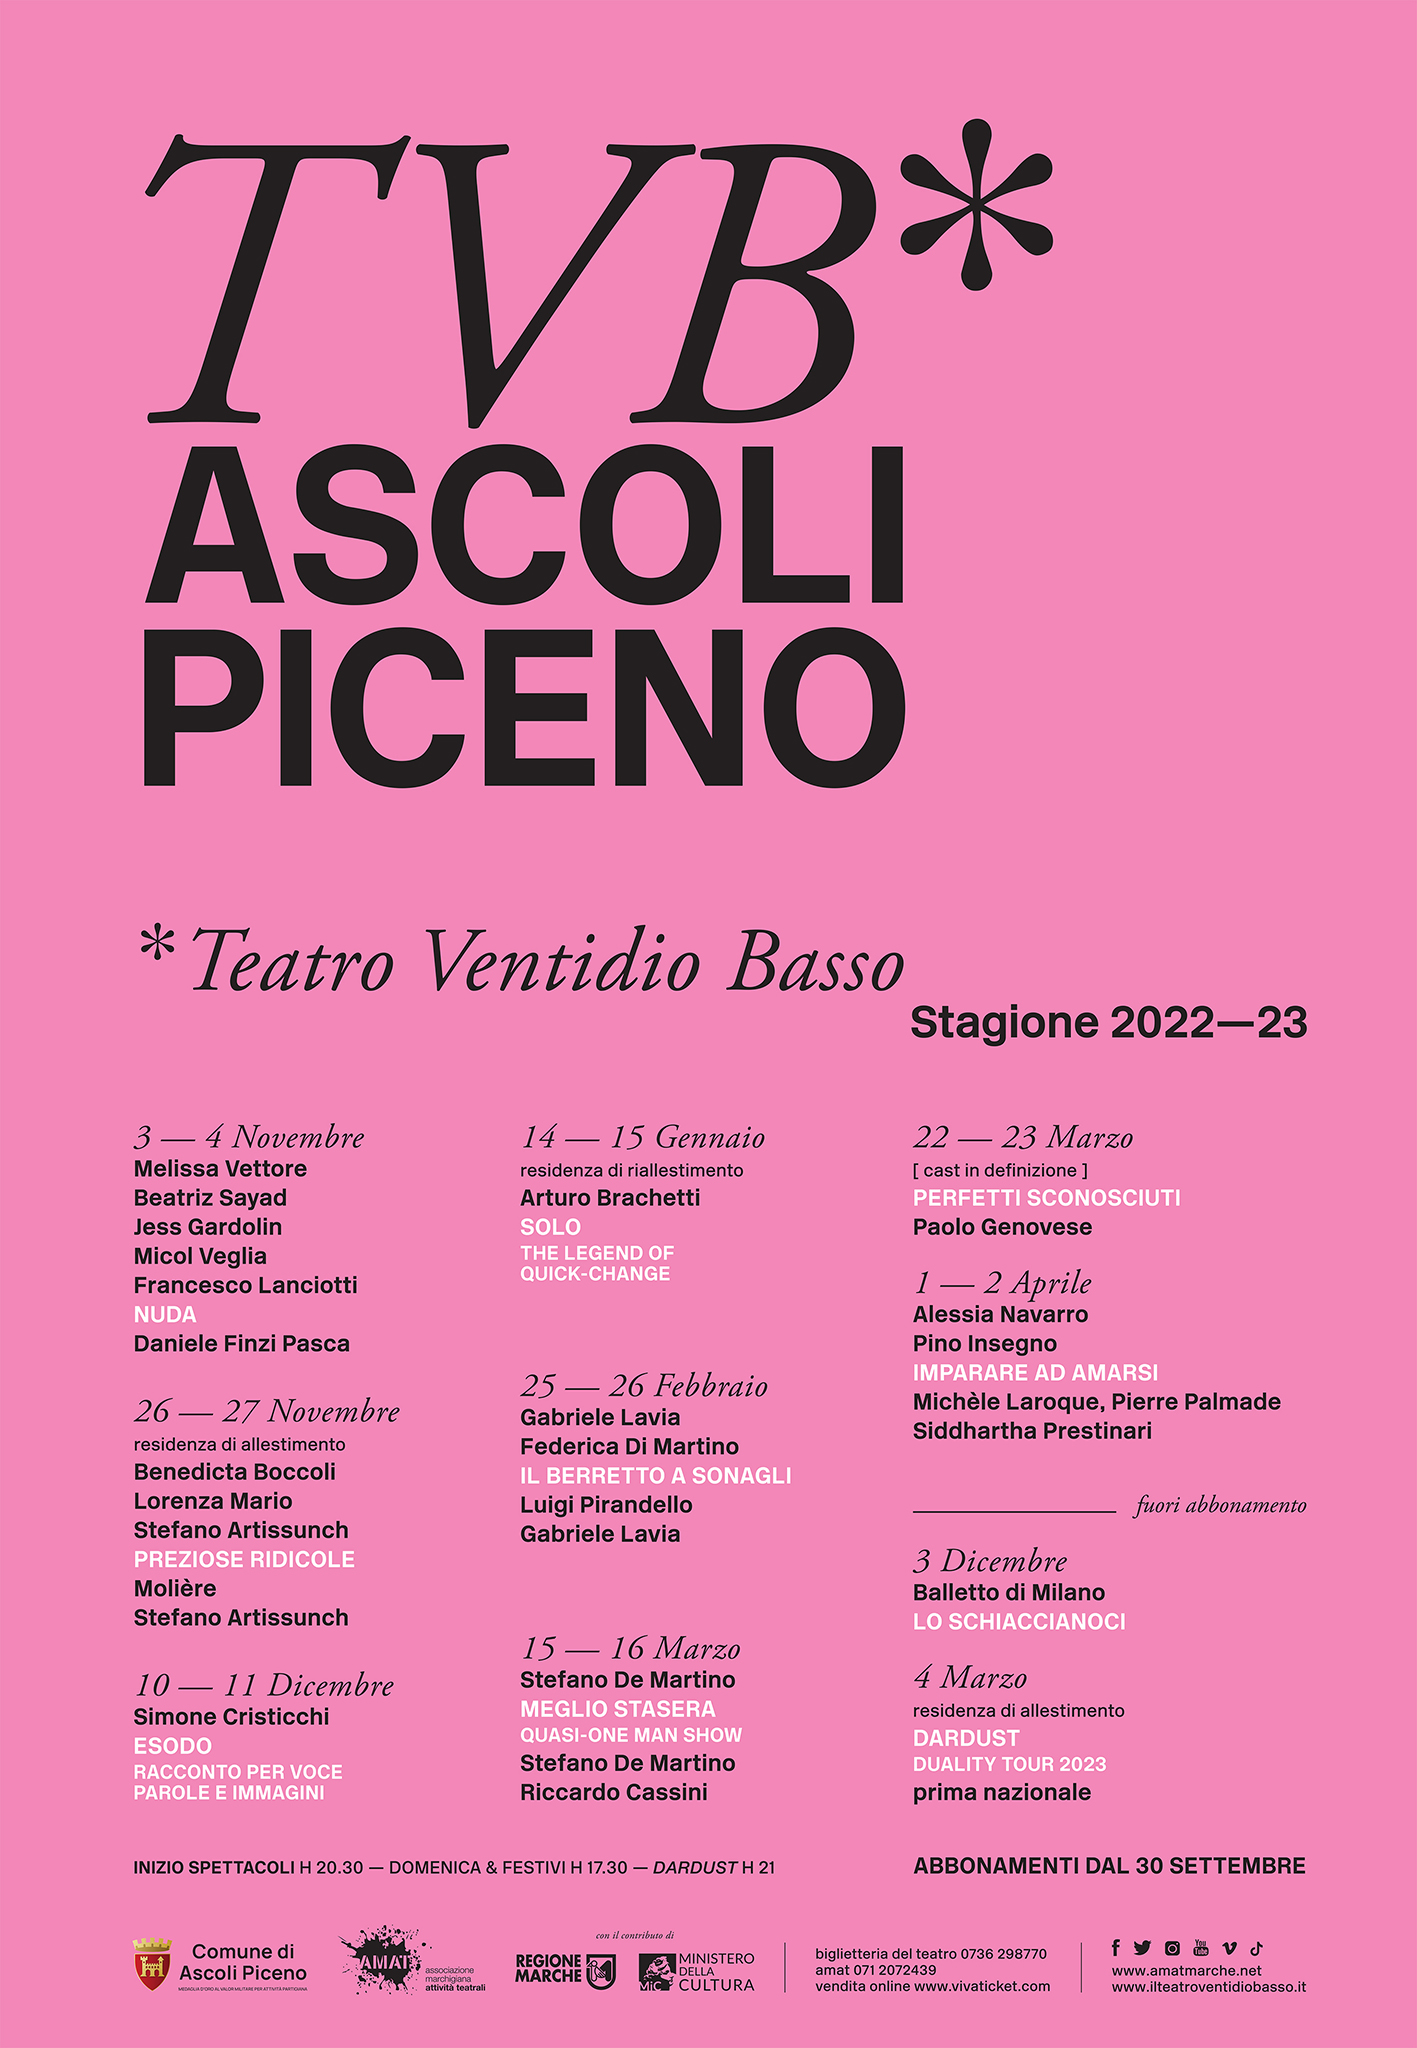 Ascoli Piceno 2022-2023